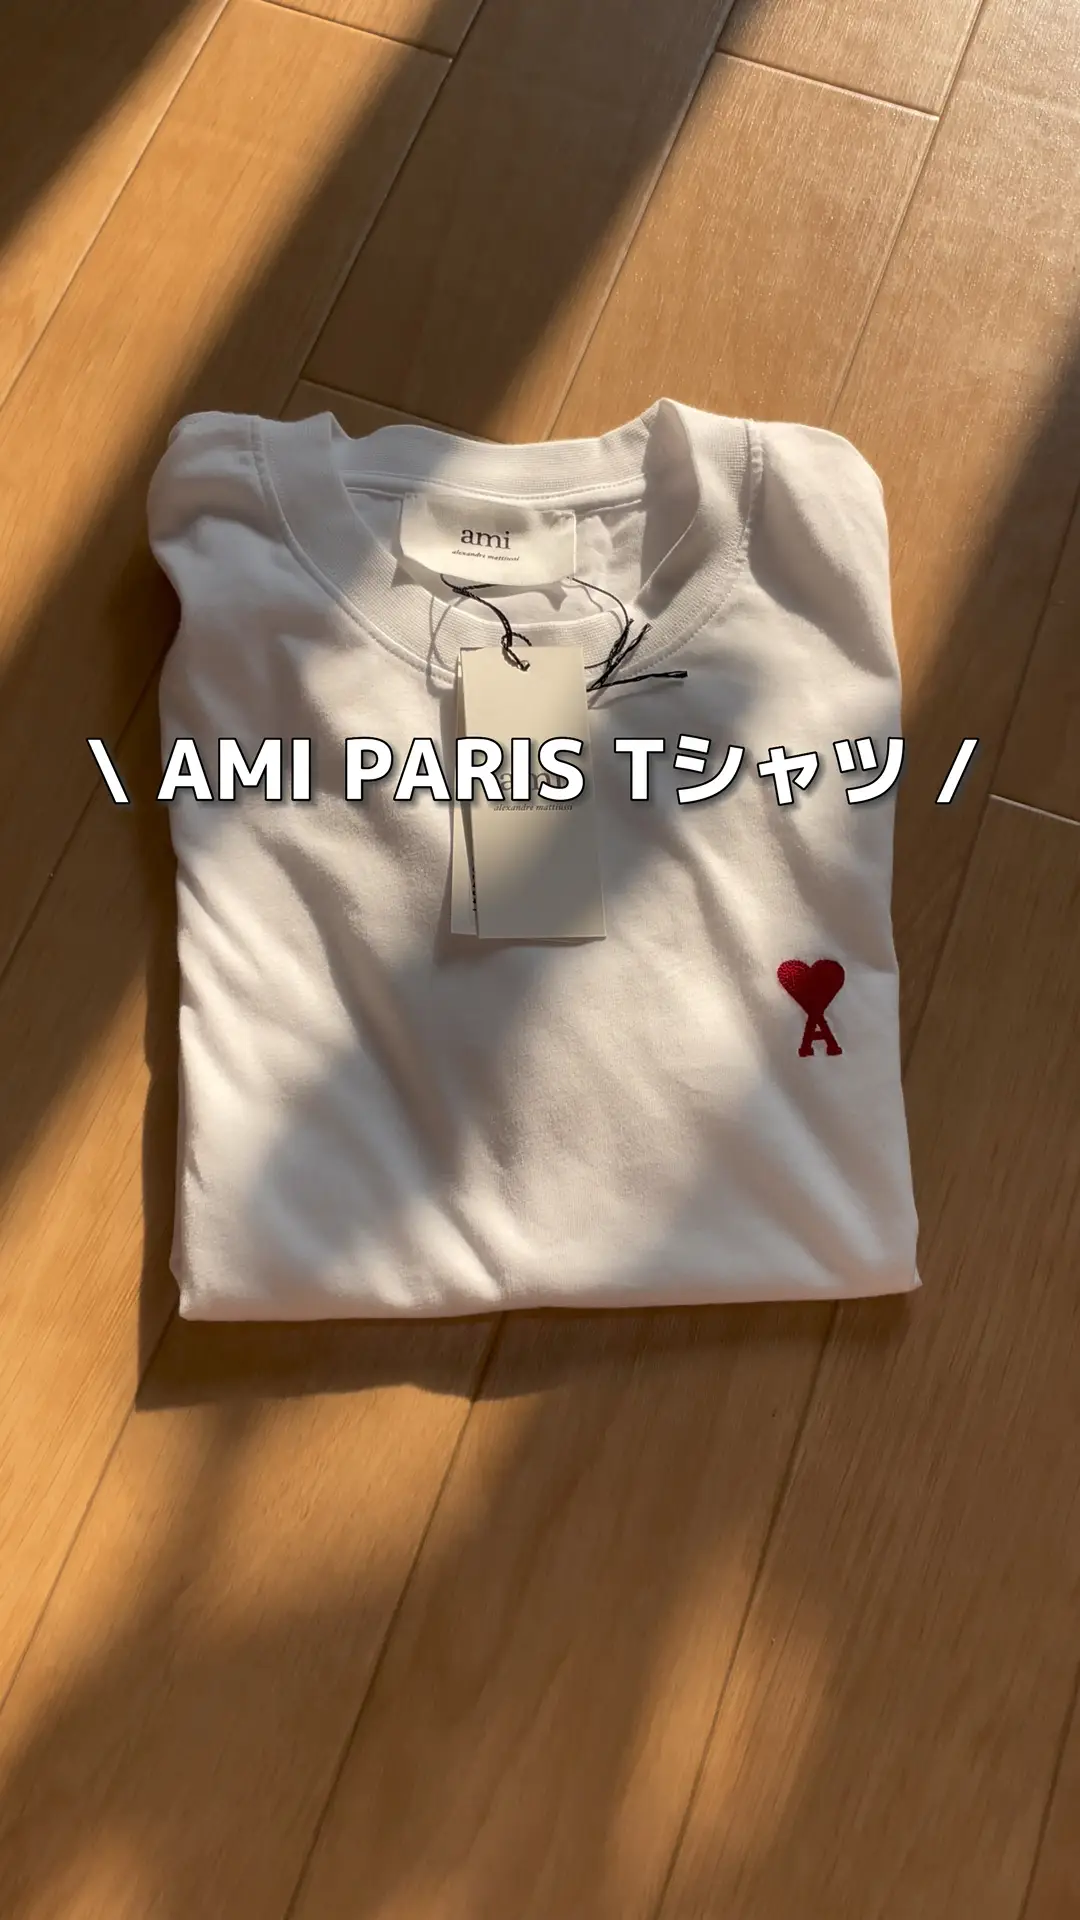 Ami Paris Tシャツ！やっぱりかわいい💕